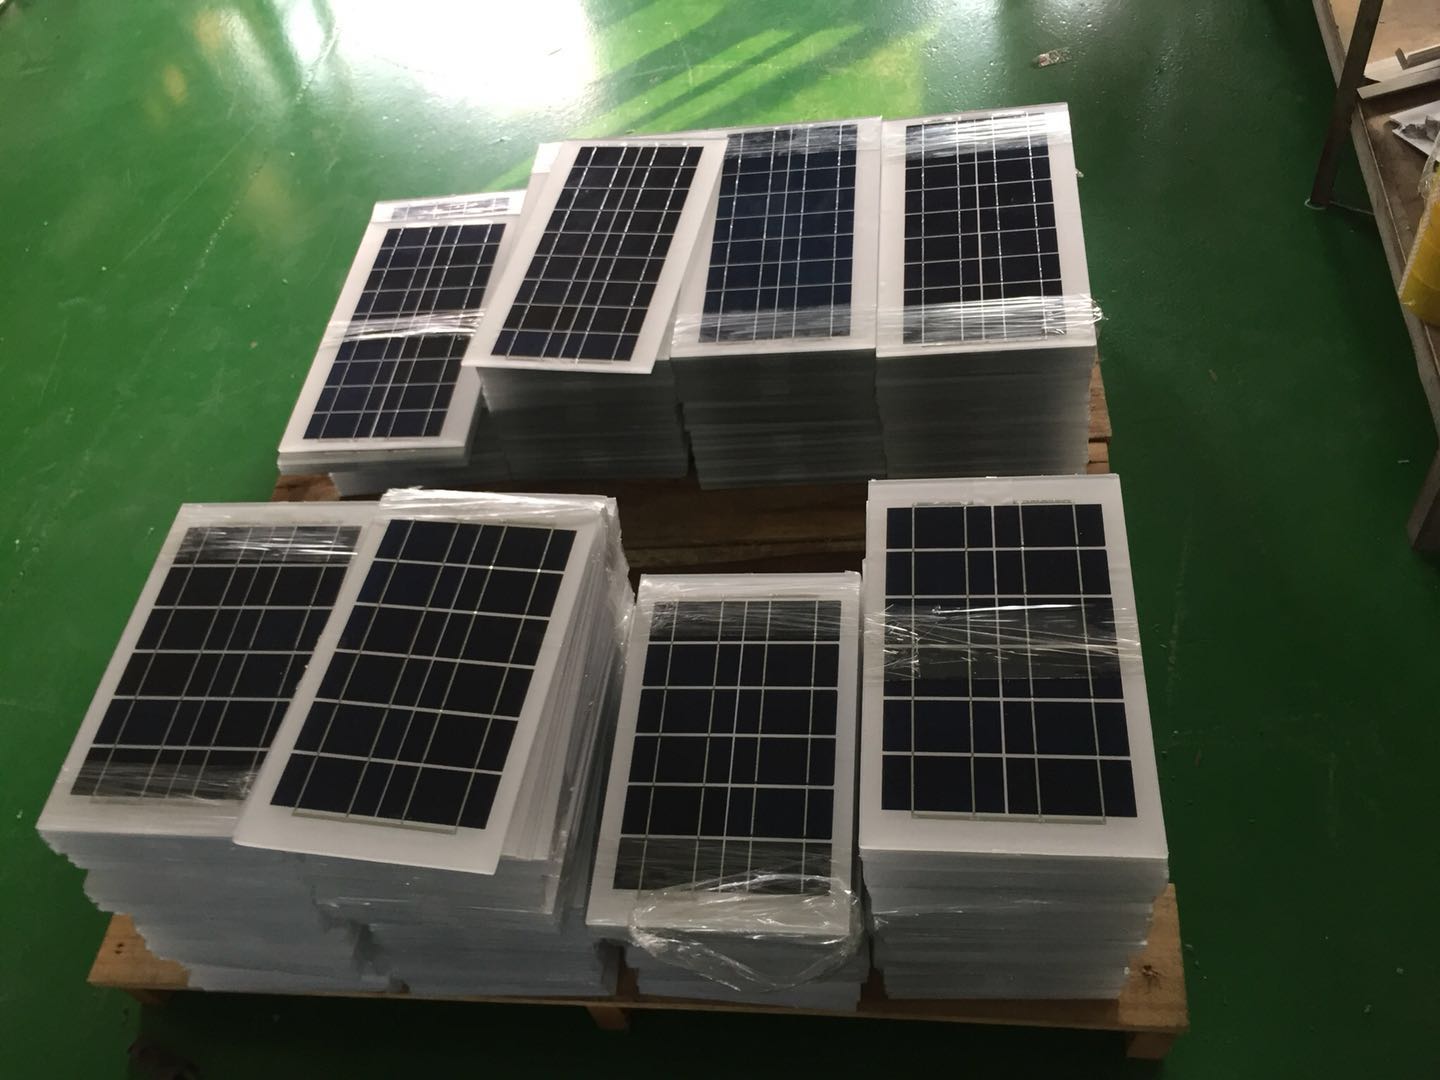 太阳能板 太阳能电池板 太阳能板厂家直销 太阳能板定制 太阳能板定做 太阳能板定做哪家好 太阳能板生产厂家 家用太阳能板